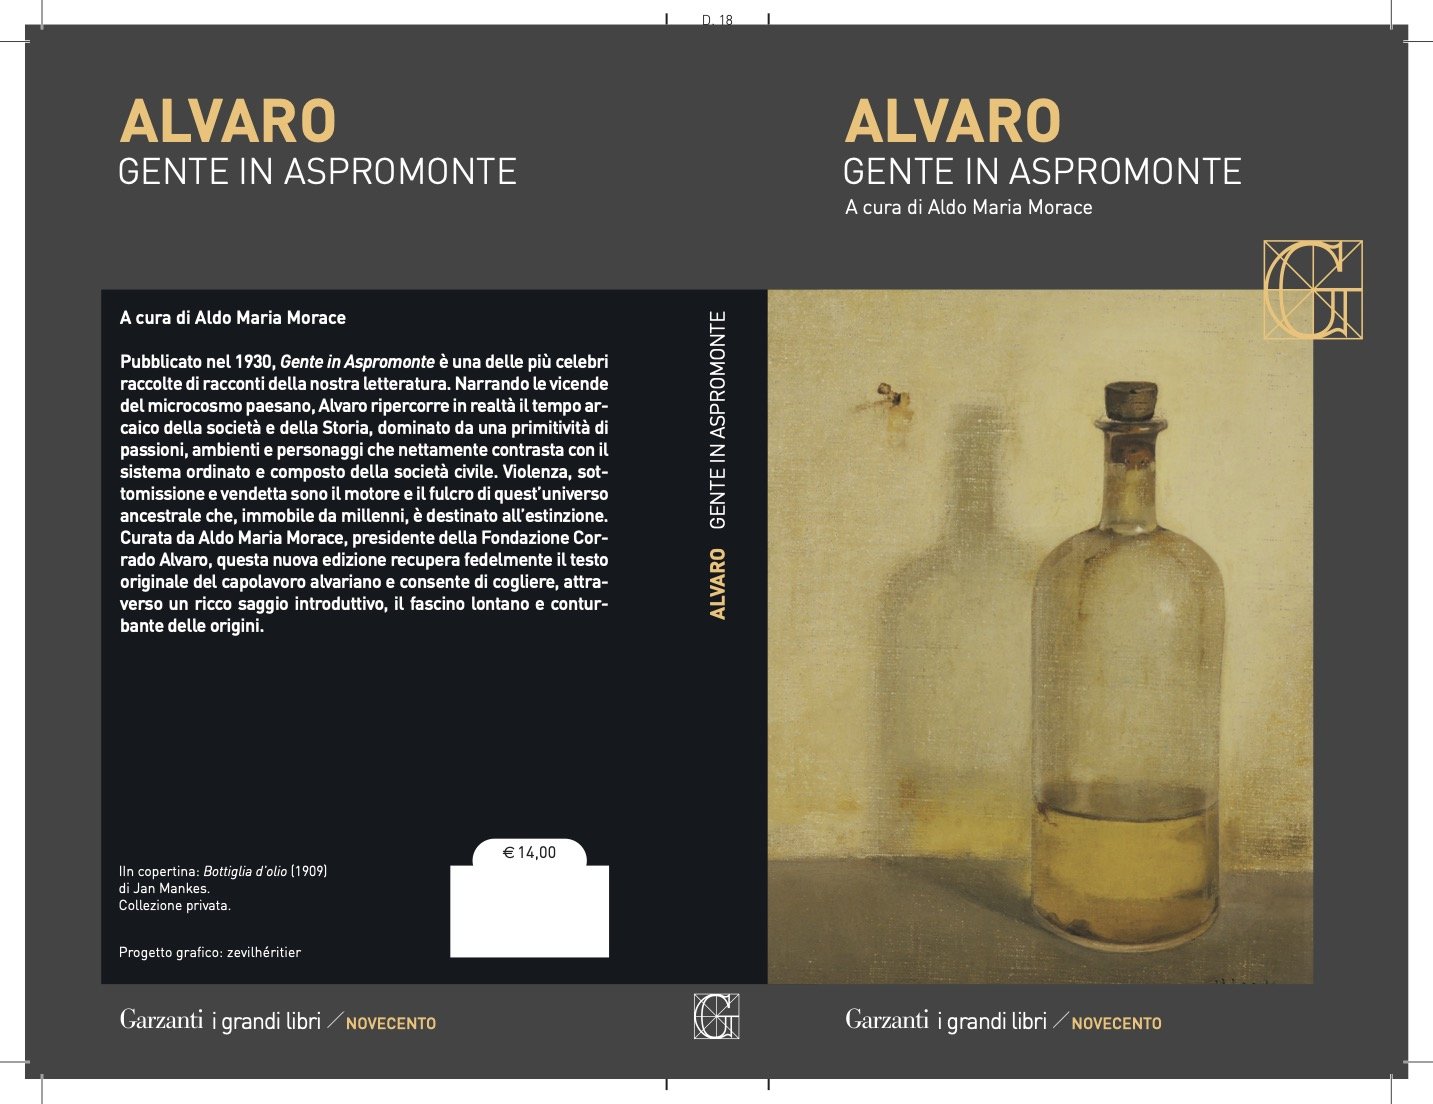 Corrado Alvaro - Gente in Aspromonte, a cura di A.M. Morace